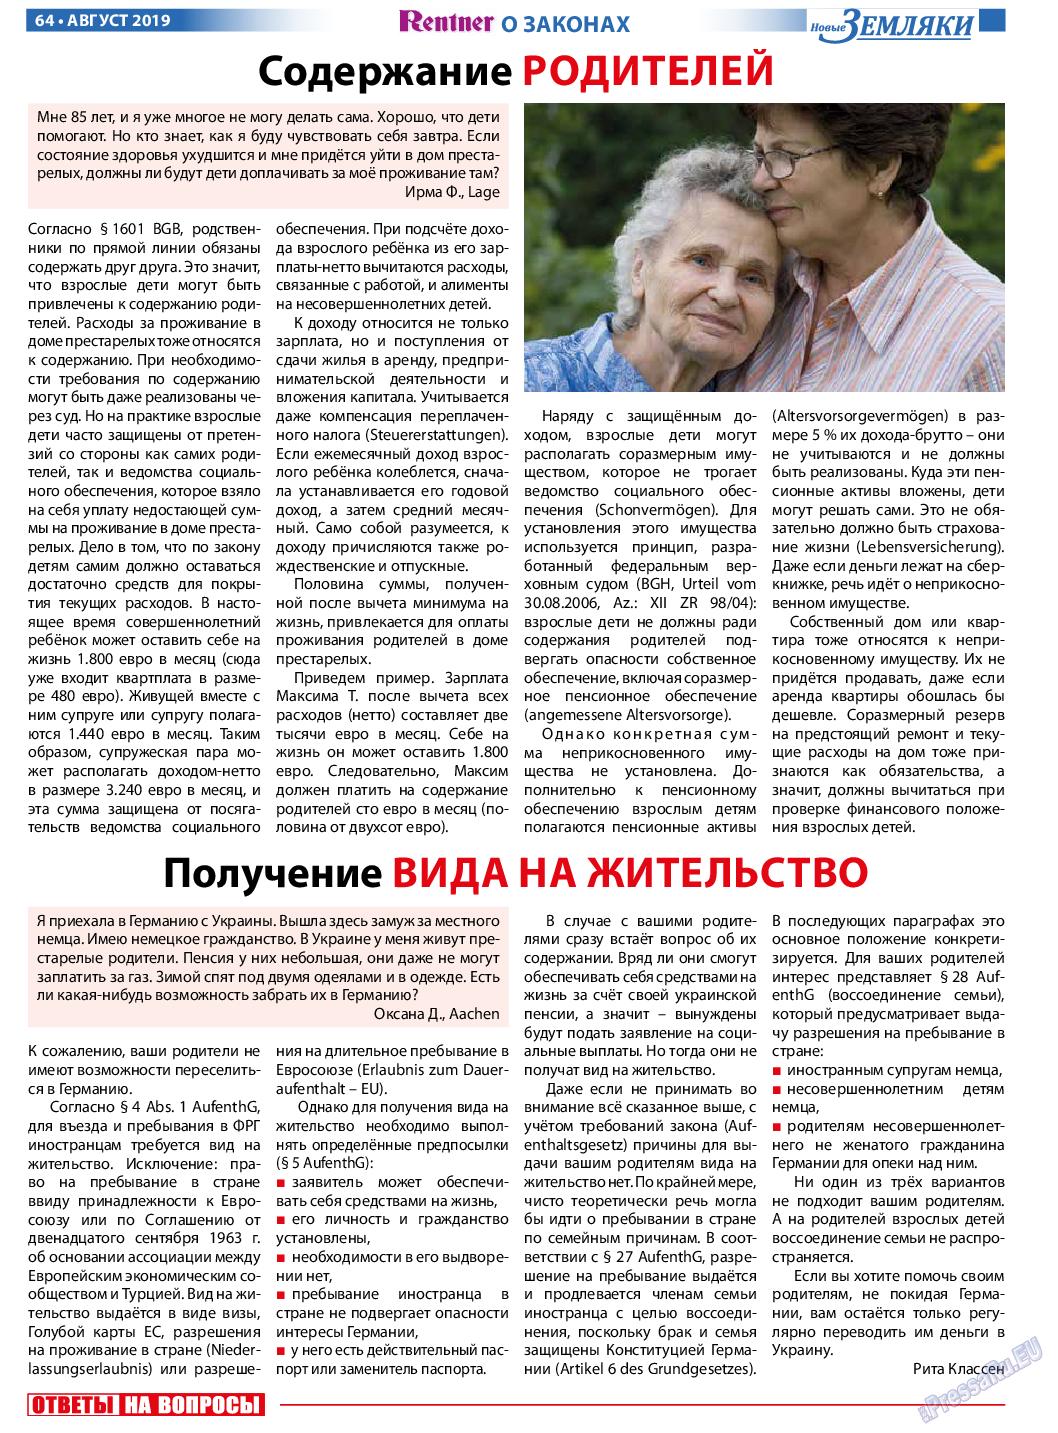 Новые Земляки, газета. 2019 №8 стр.64